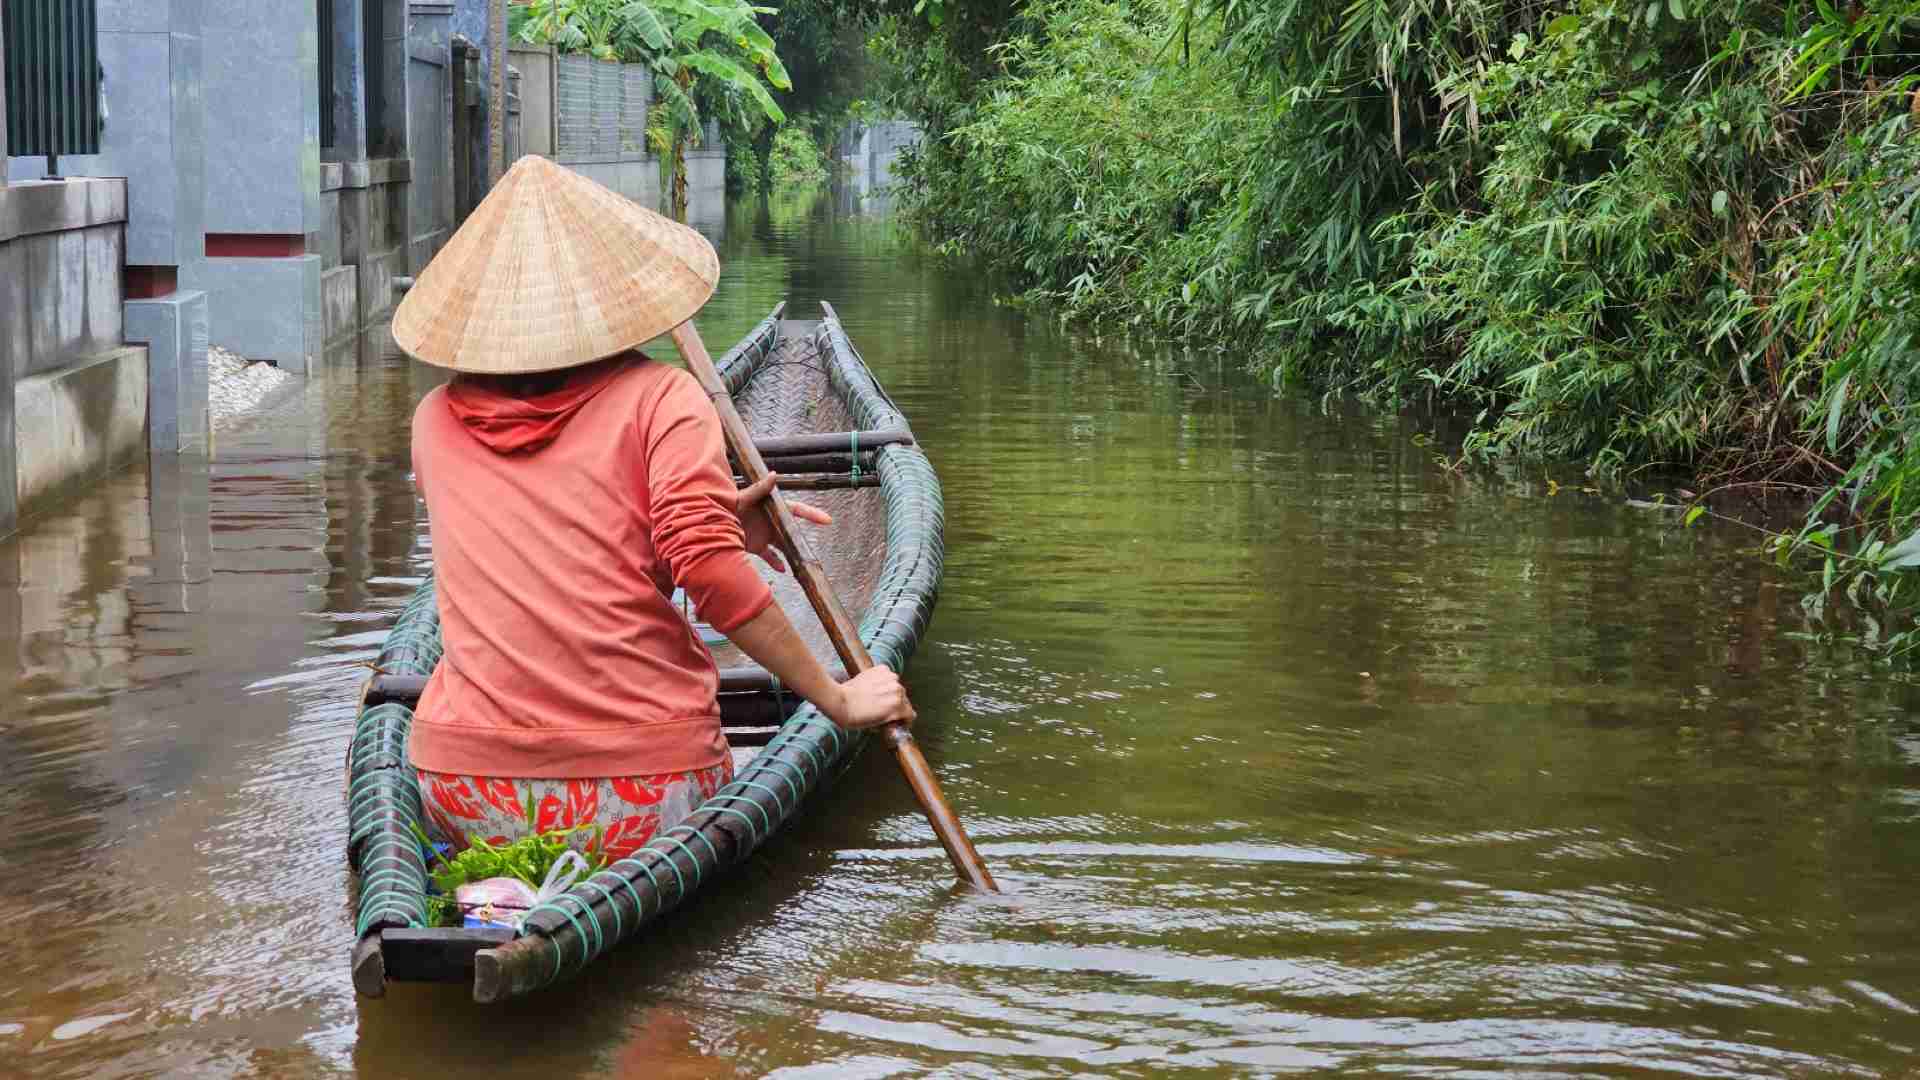 Cái làng thấp trũng nhất ở Thừa Thiên Huế, ngan, vịt bơi đầy sân, gà &quot;chạy&quot; lên gác, đường xóm thành sông - Ảnh 5.